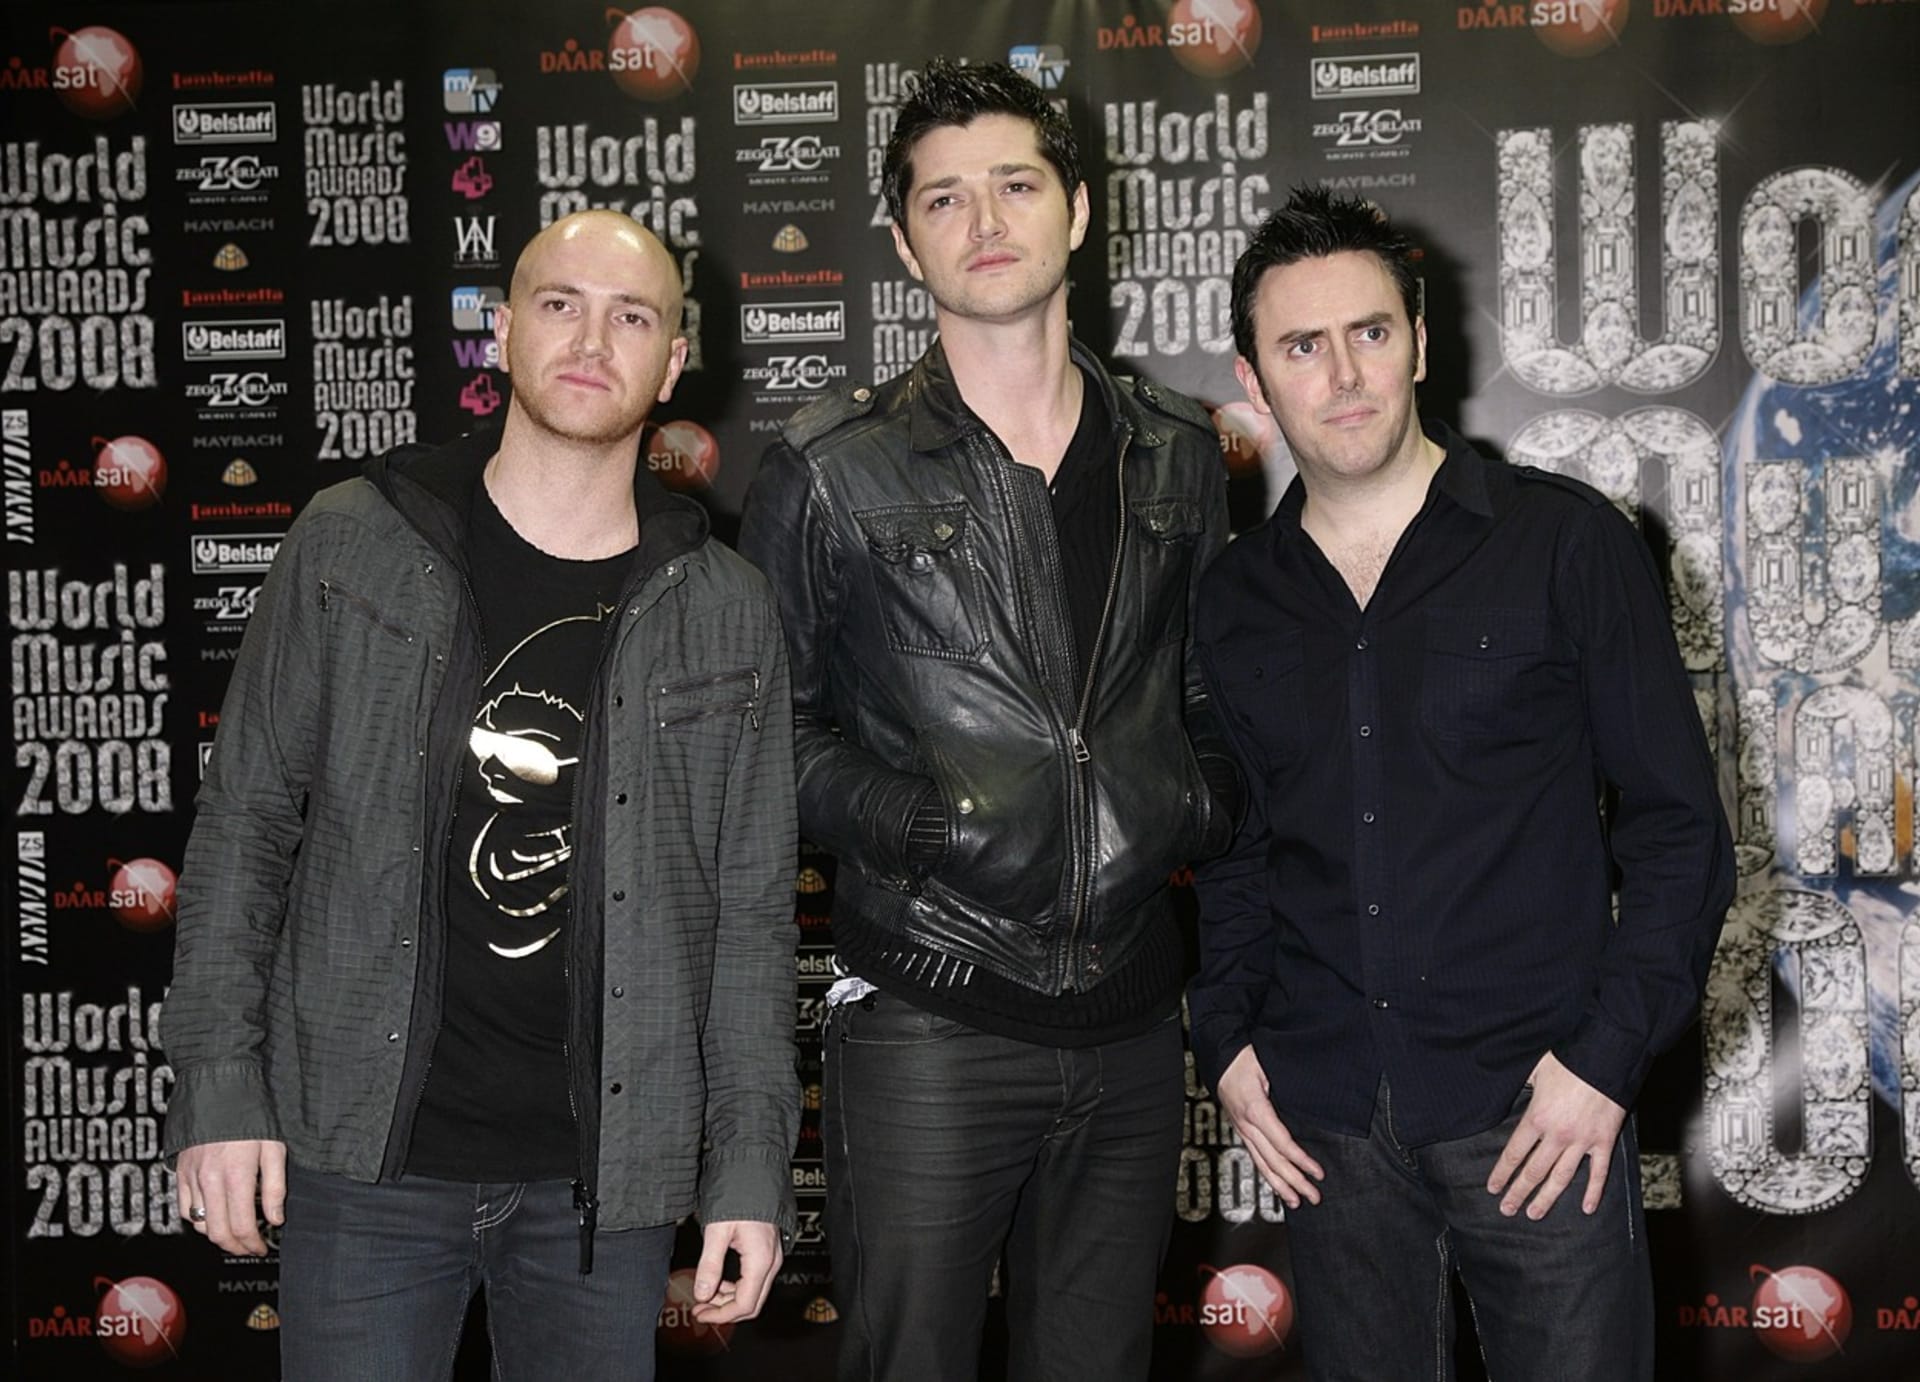 Tříčlenná kapela The Script vznikla roce 2003 v Dublinu.